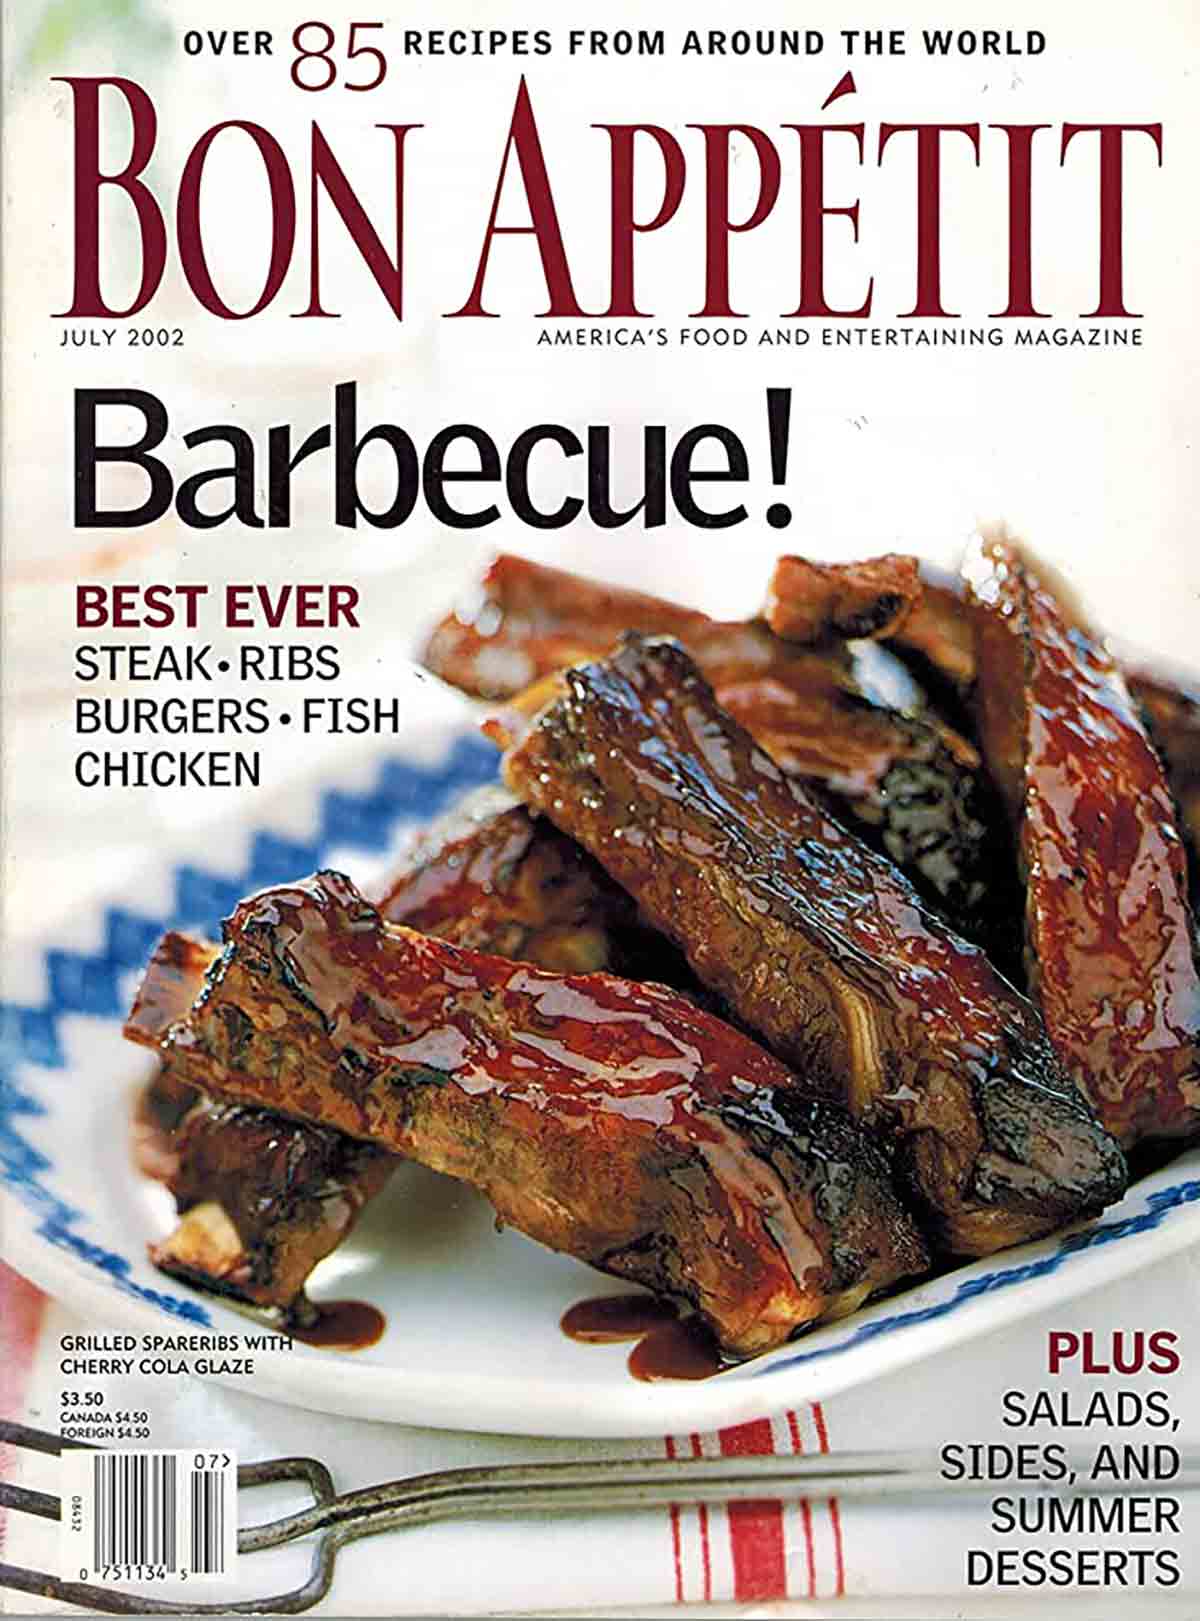 Bon Appetit magazine barbecue cover.